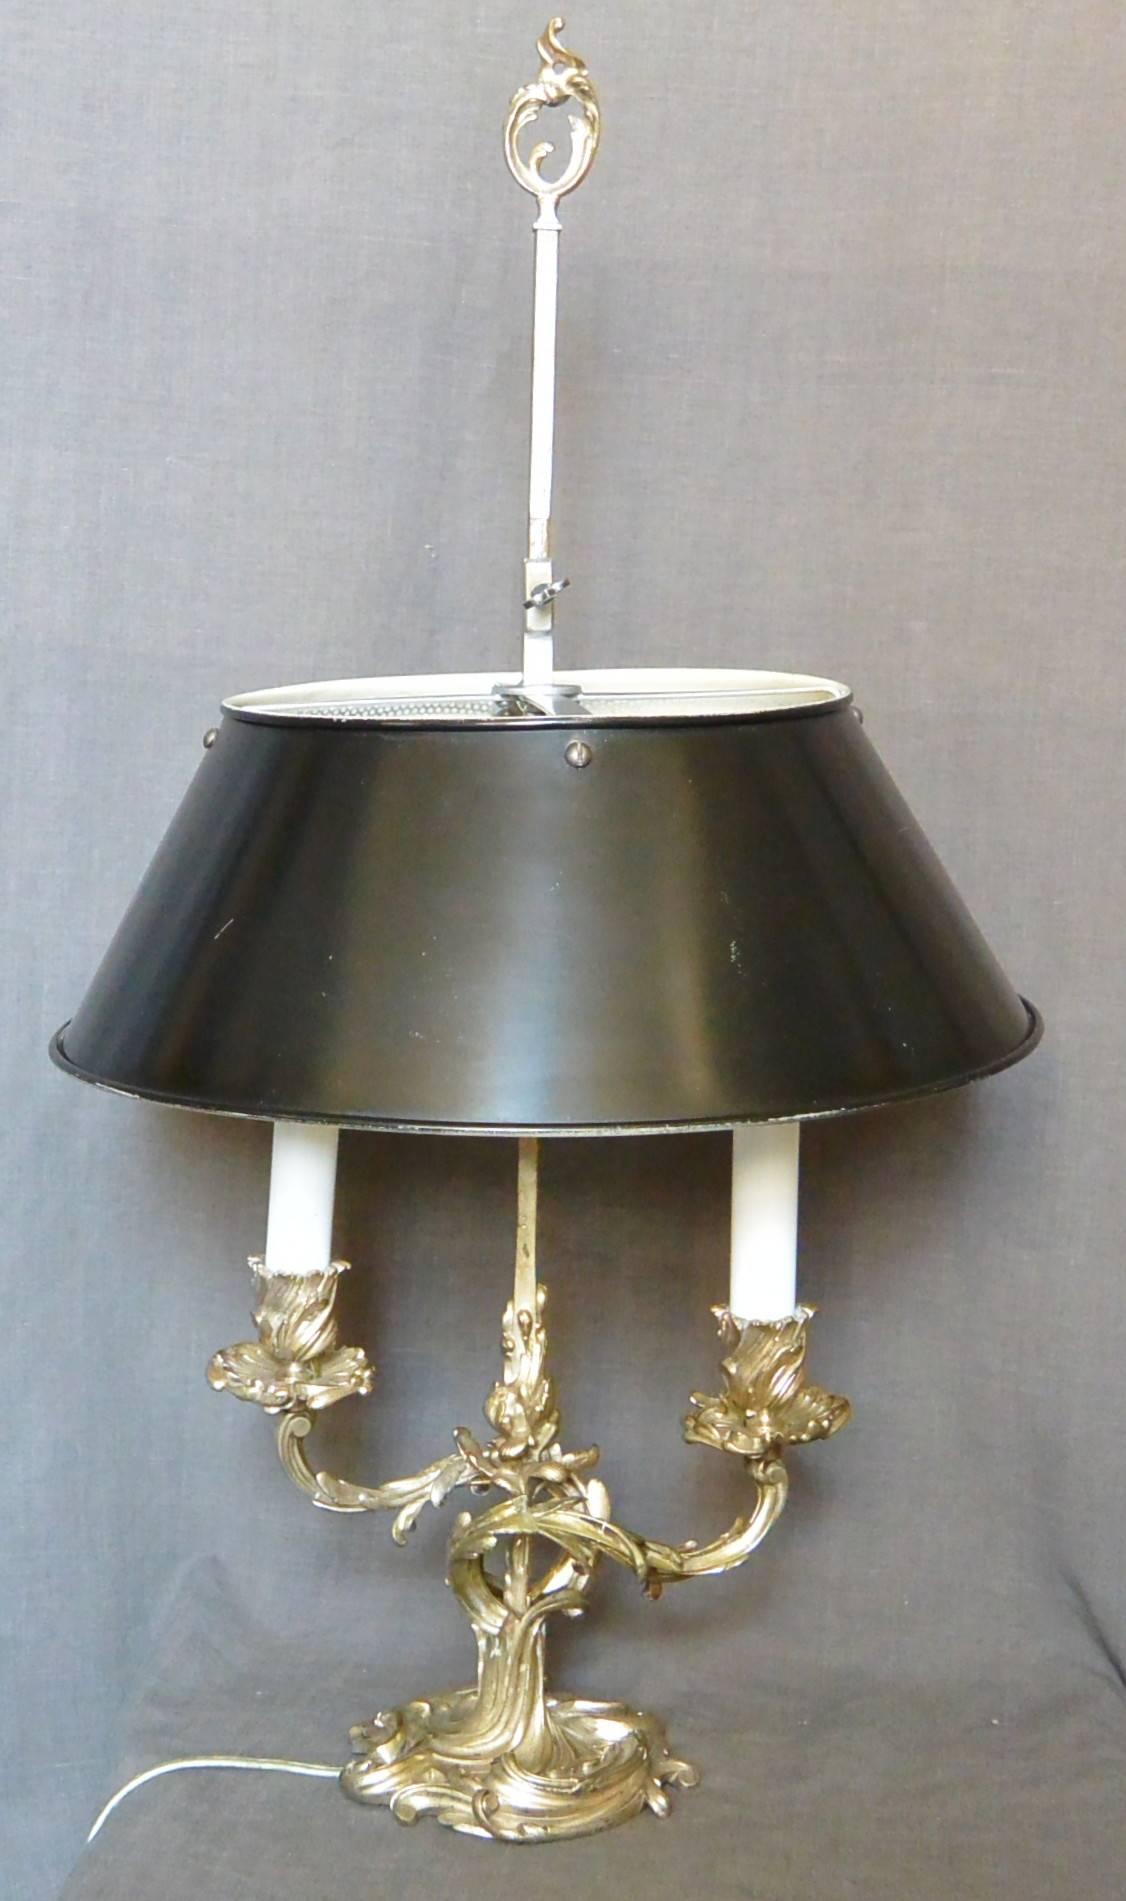 Lampe bouillotte à deux bras de style Louis XV en métal argenté avec abat-jour en tole noire postérieur. Nouvellement électrifié, France, vers les années 1930. 
Dimension : 23.5